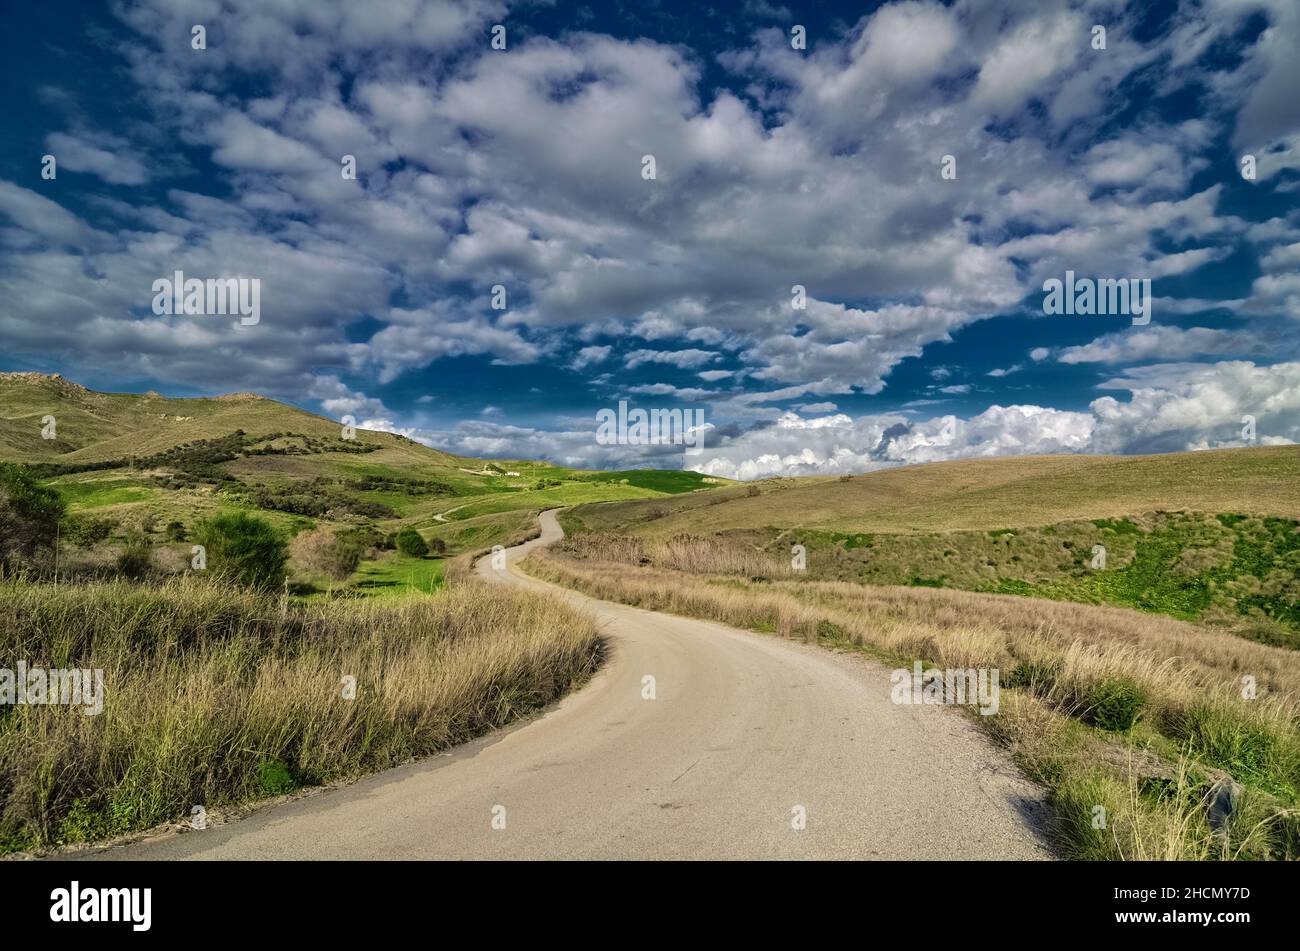 Tortuosa strada di campagna in una zona rurale della Sicilia nuvoloso e l'agricoltura collinare Foto Stock